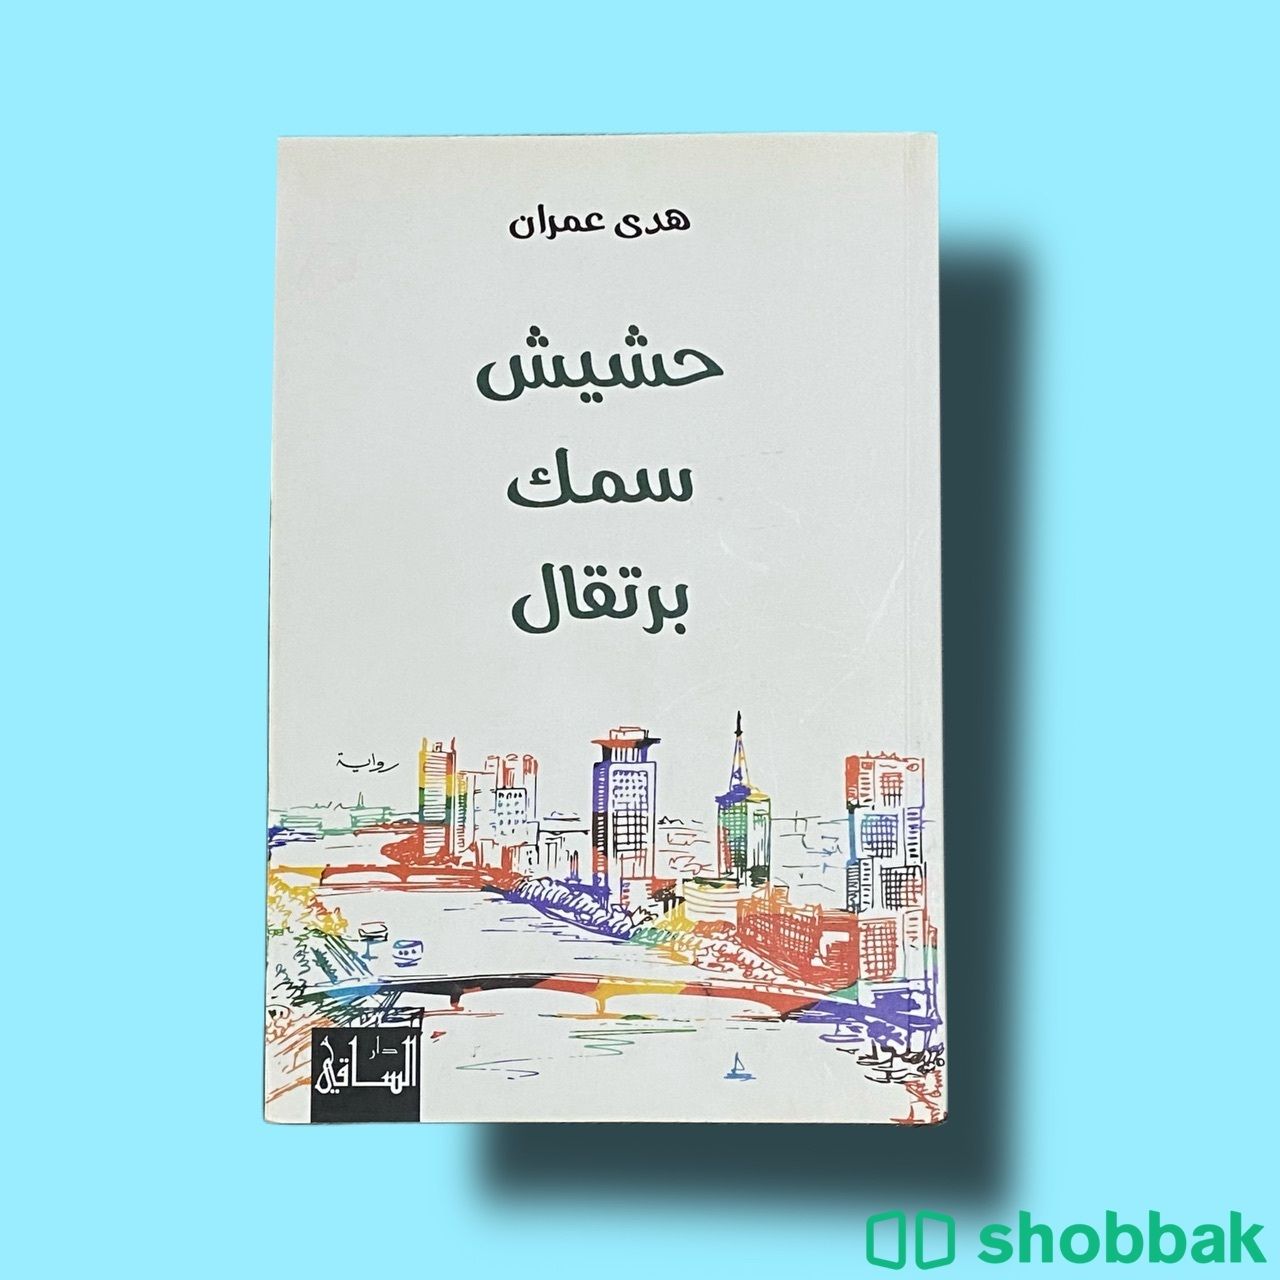 كتب مستعملة مره واحدة أصلية نظيفة Shobbak Saudi Arabia